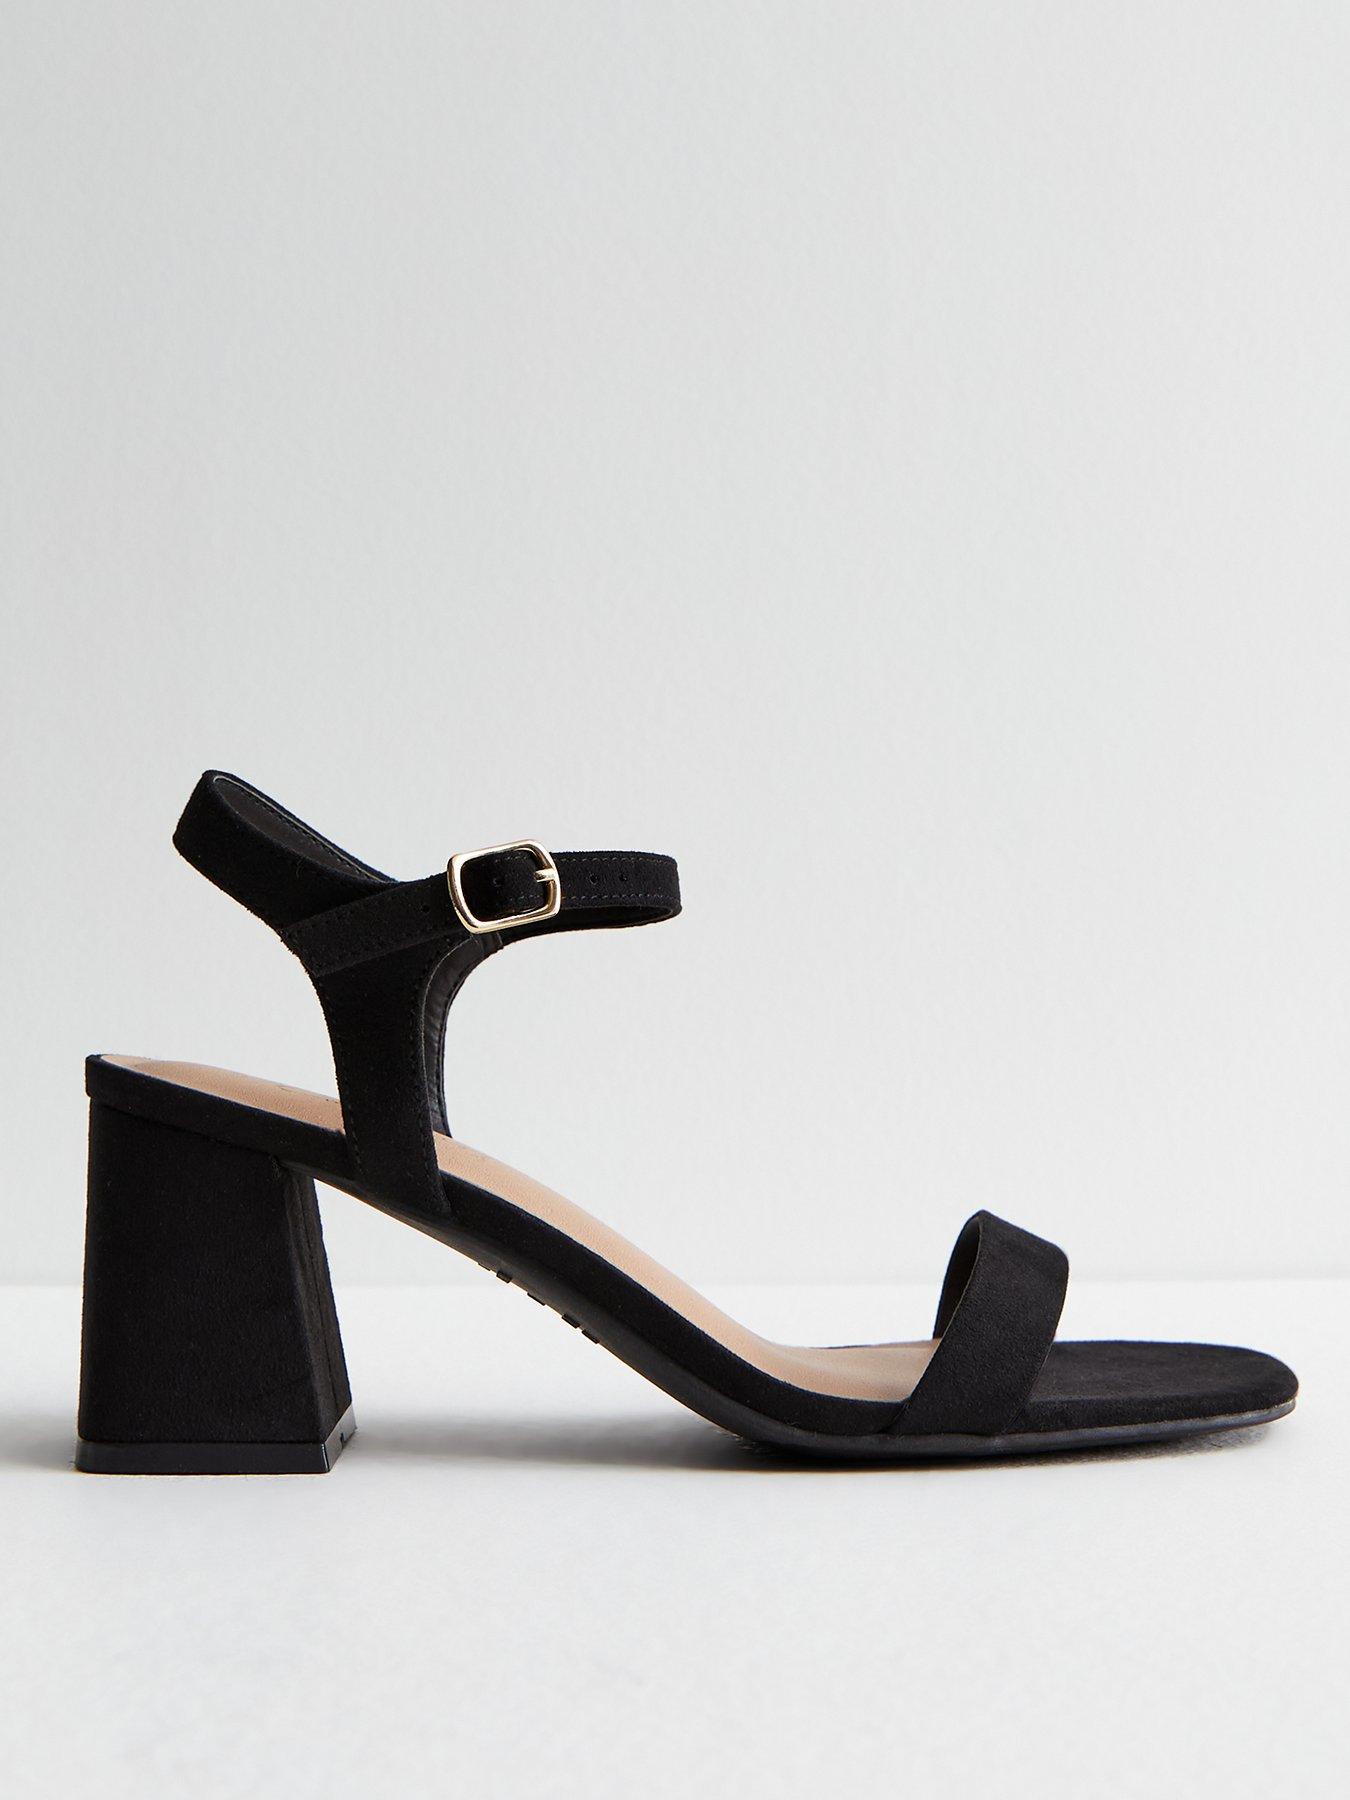 New look design trendy hell black sandal for women